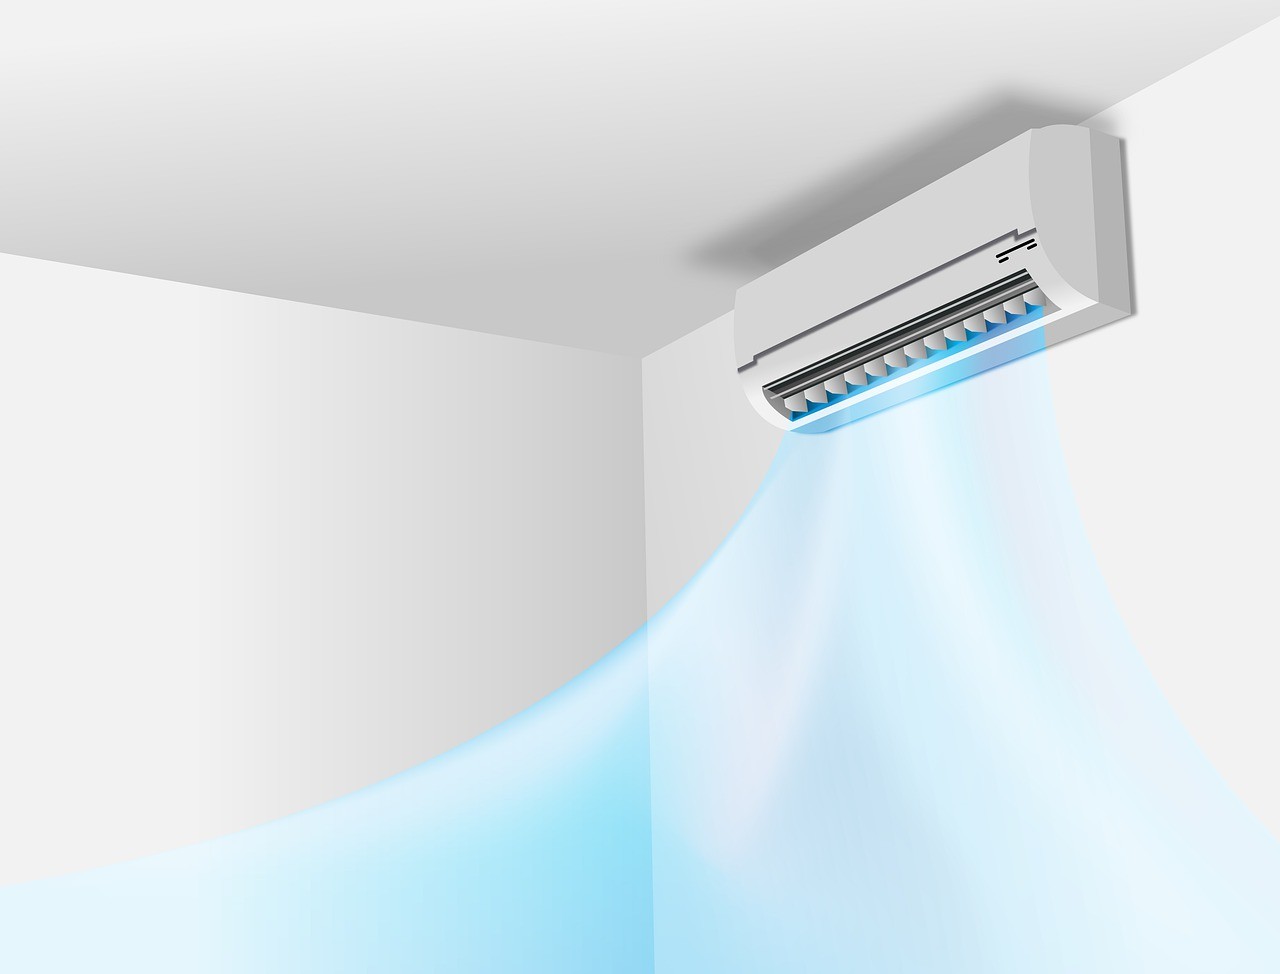 O vilão do consumo de energia deixou de ser o chuveiro elétrico e se tornou o ar condicionado (Foto: Pixabay)